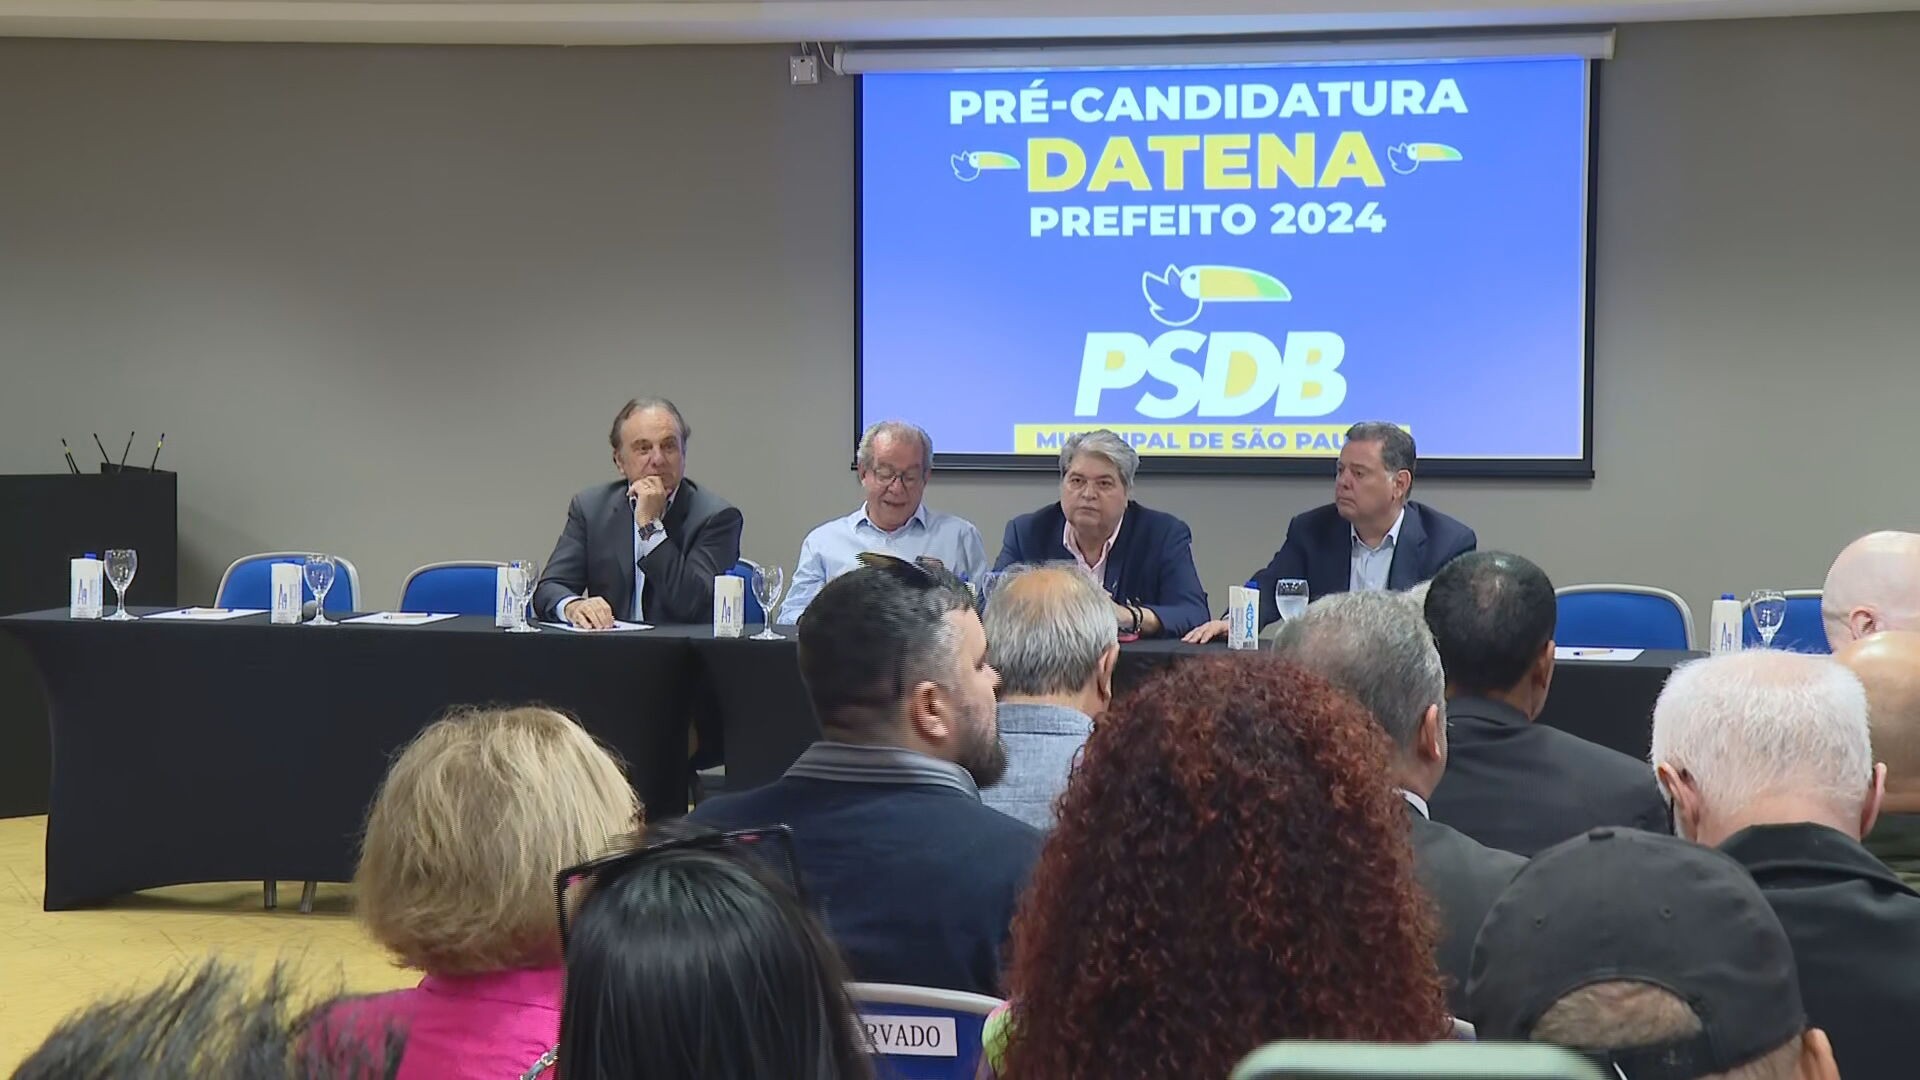 PSDB oficializa pré-candidatura de Datena à Prefeitura de SP